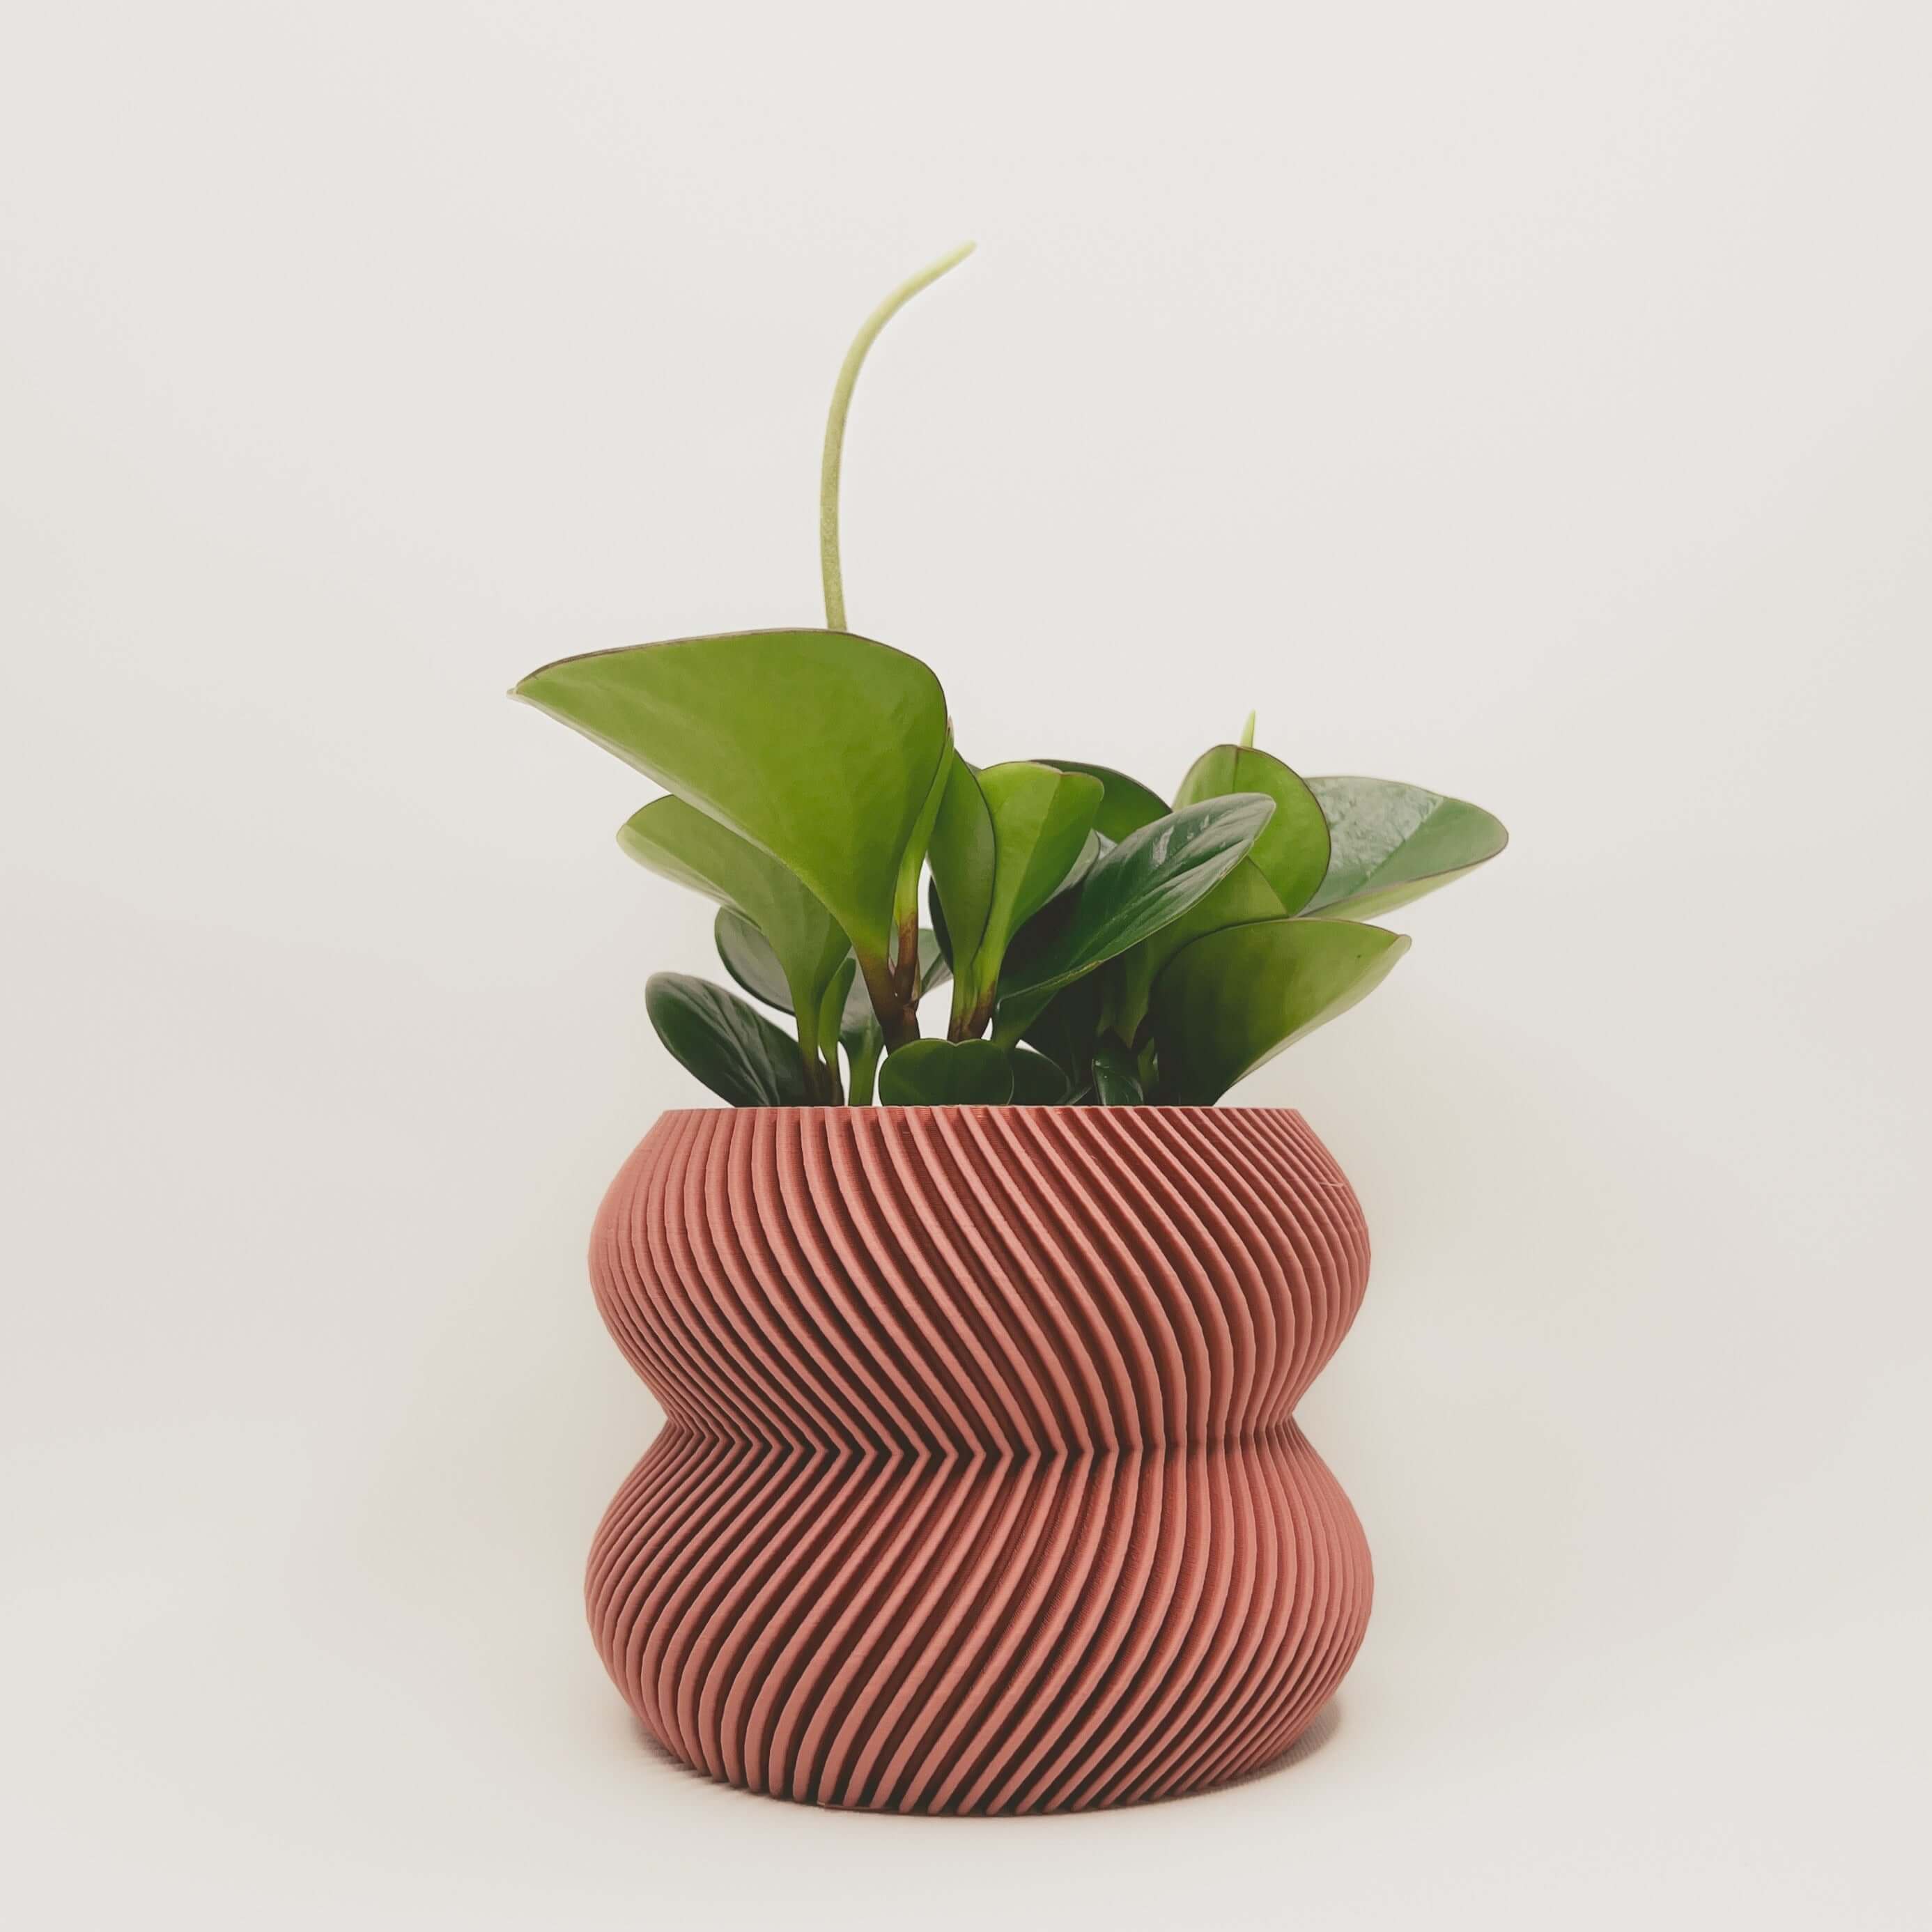 Cache-pot minimaliste en matériaux durables, conçu au Québec